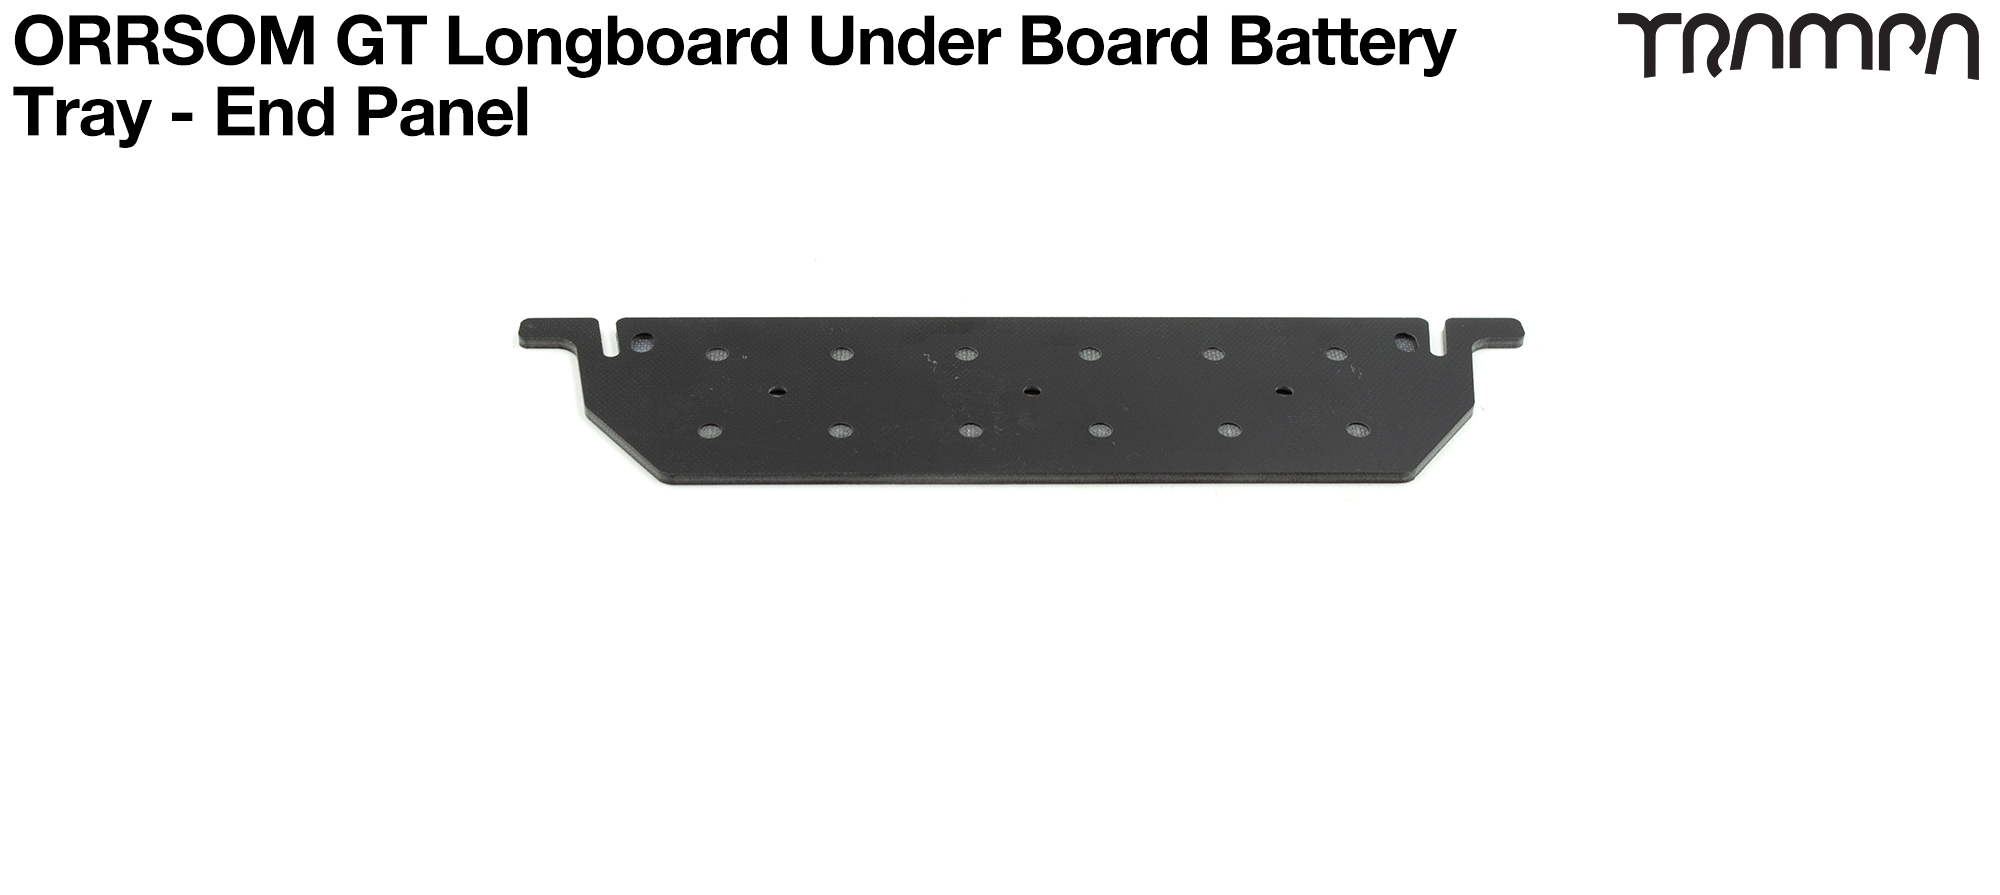 ORRSOM GT Longboard Under board Battery Tray - END PANEL 